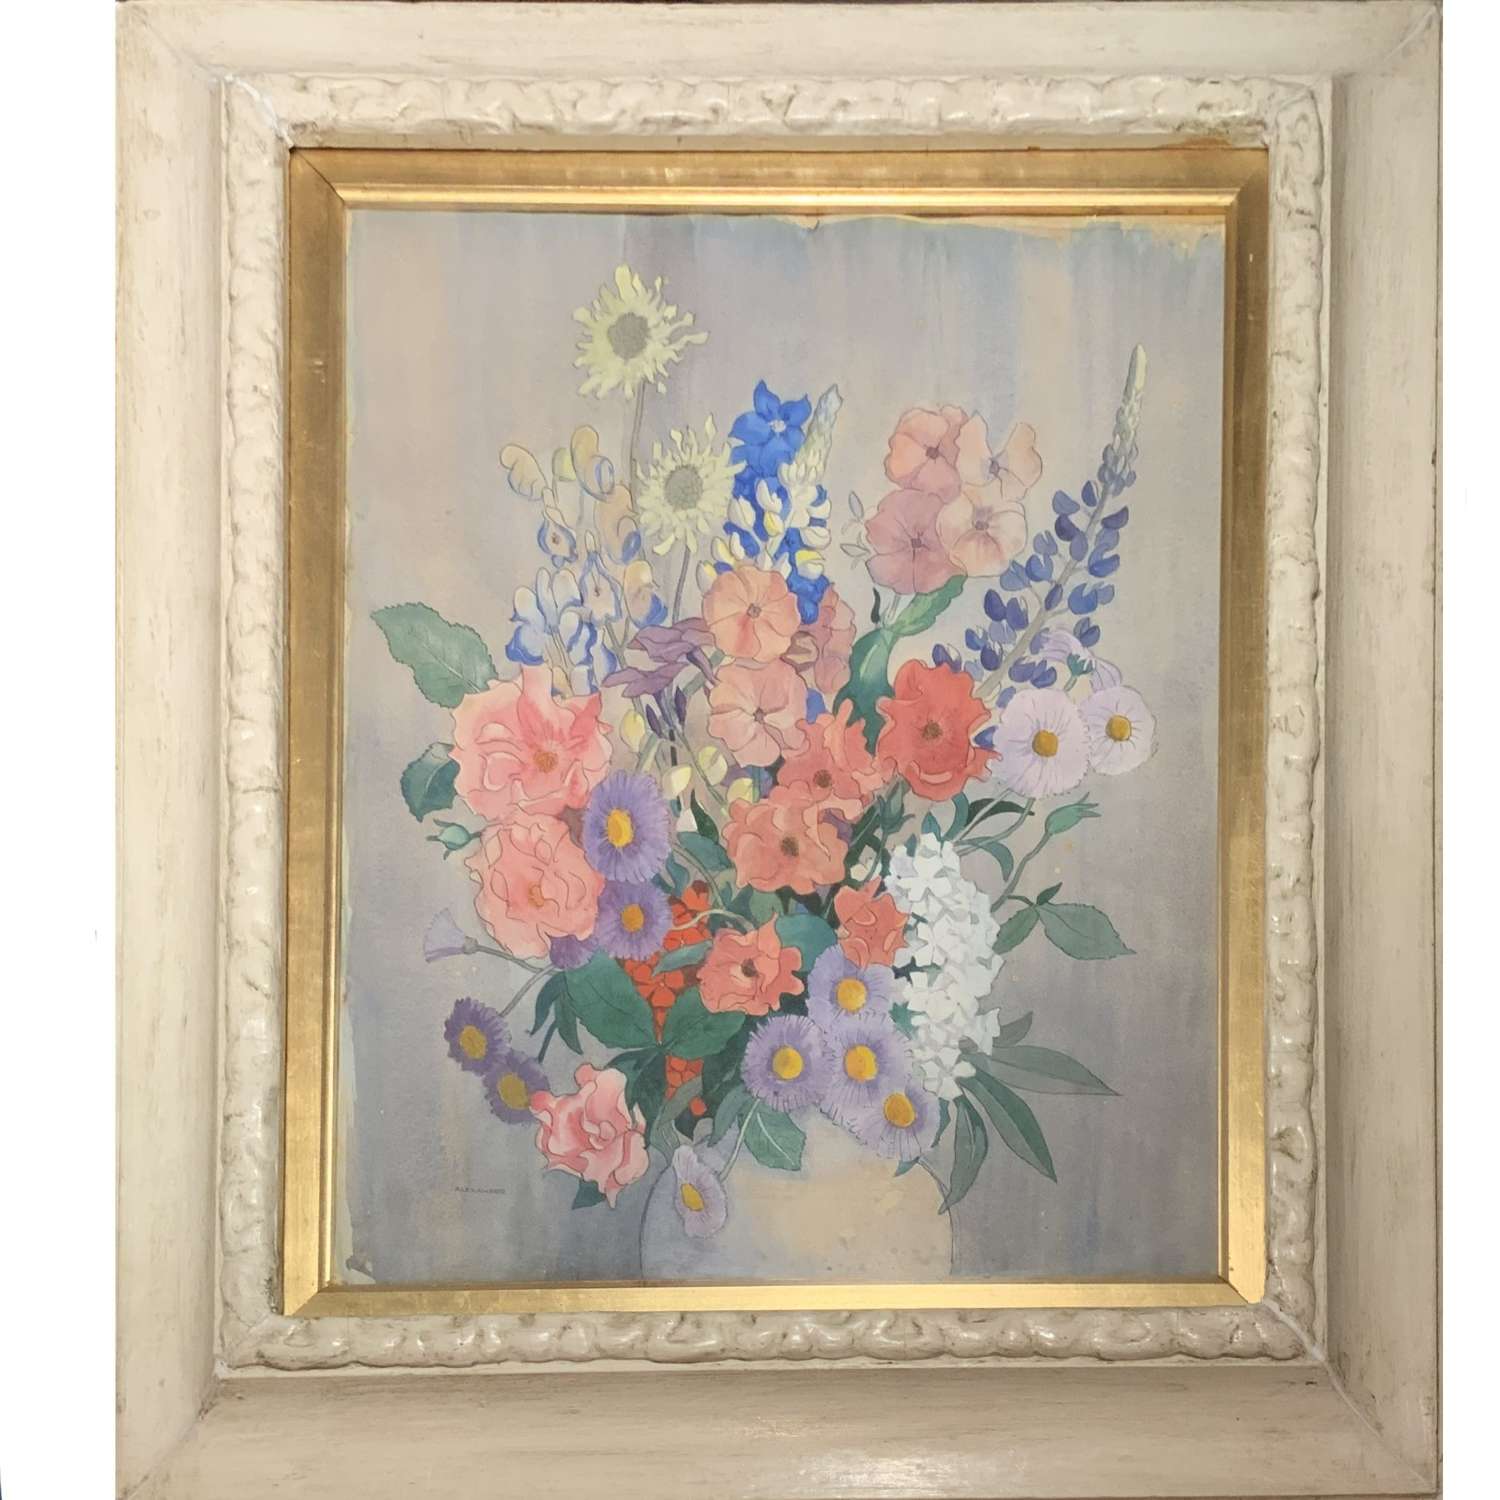 James Stuart Carnegie Alexander (1900-1952) “A Vase of Flowers”